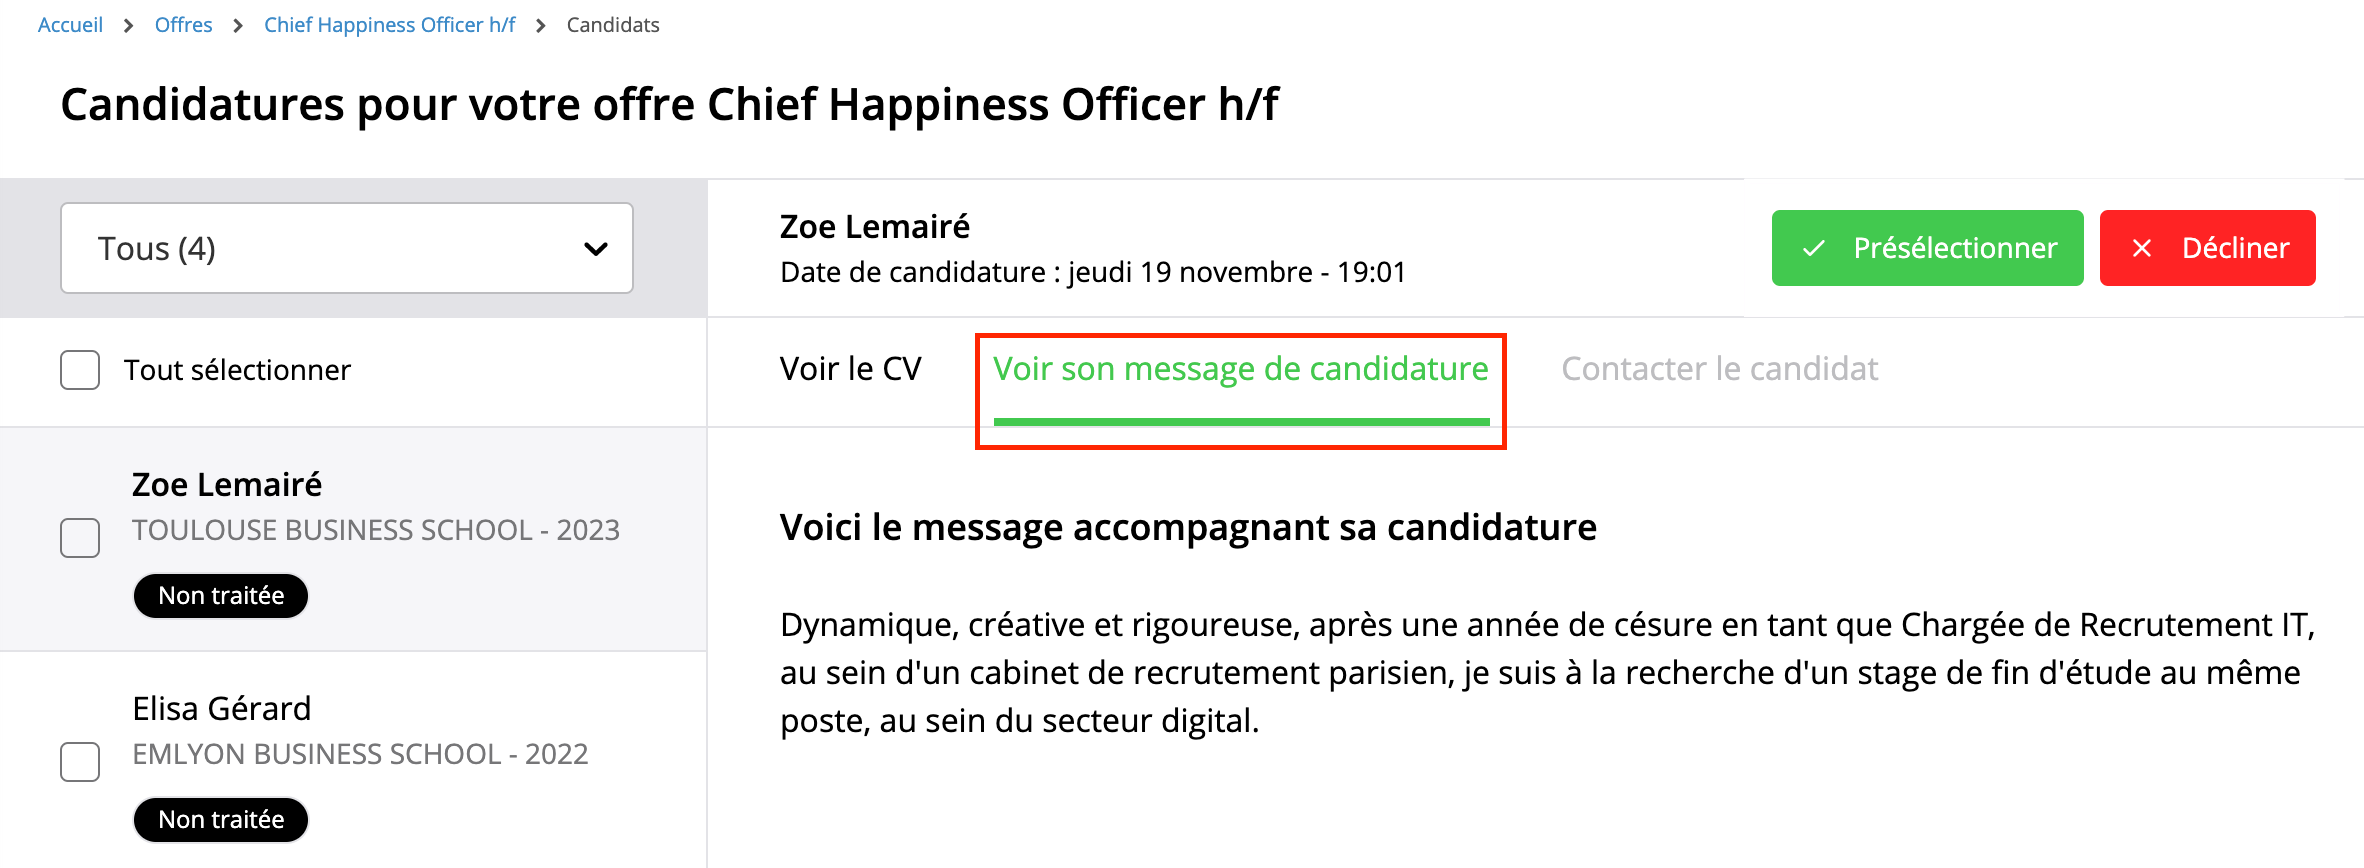 Voir_le_message_de_candidature.png